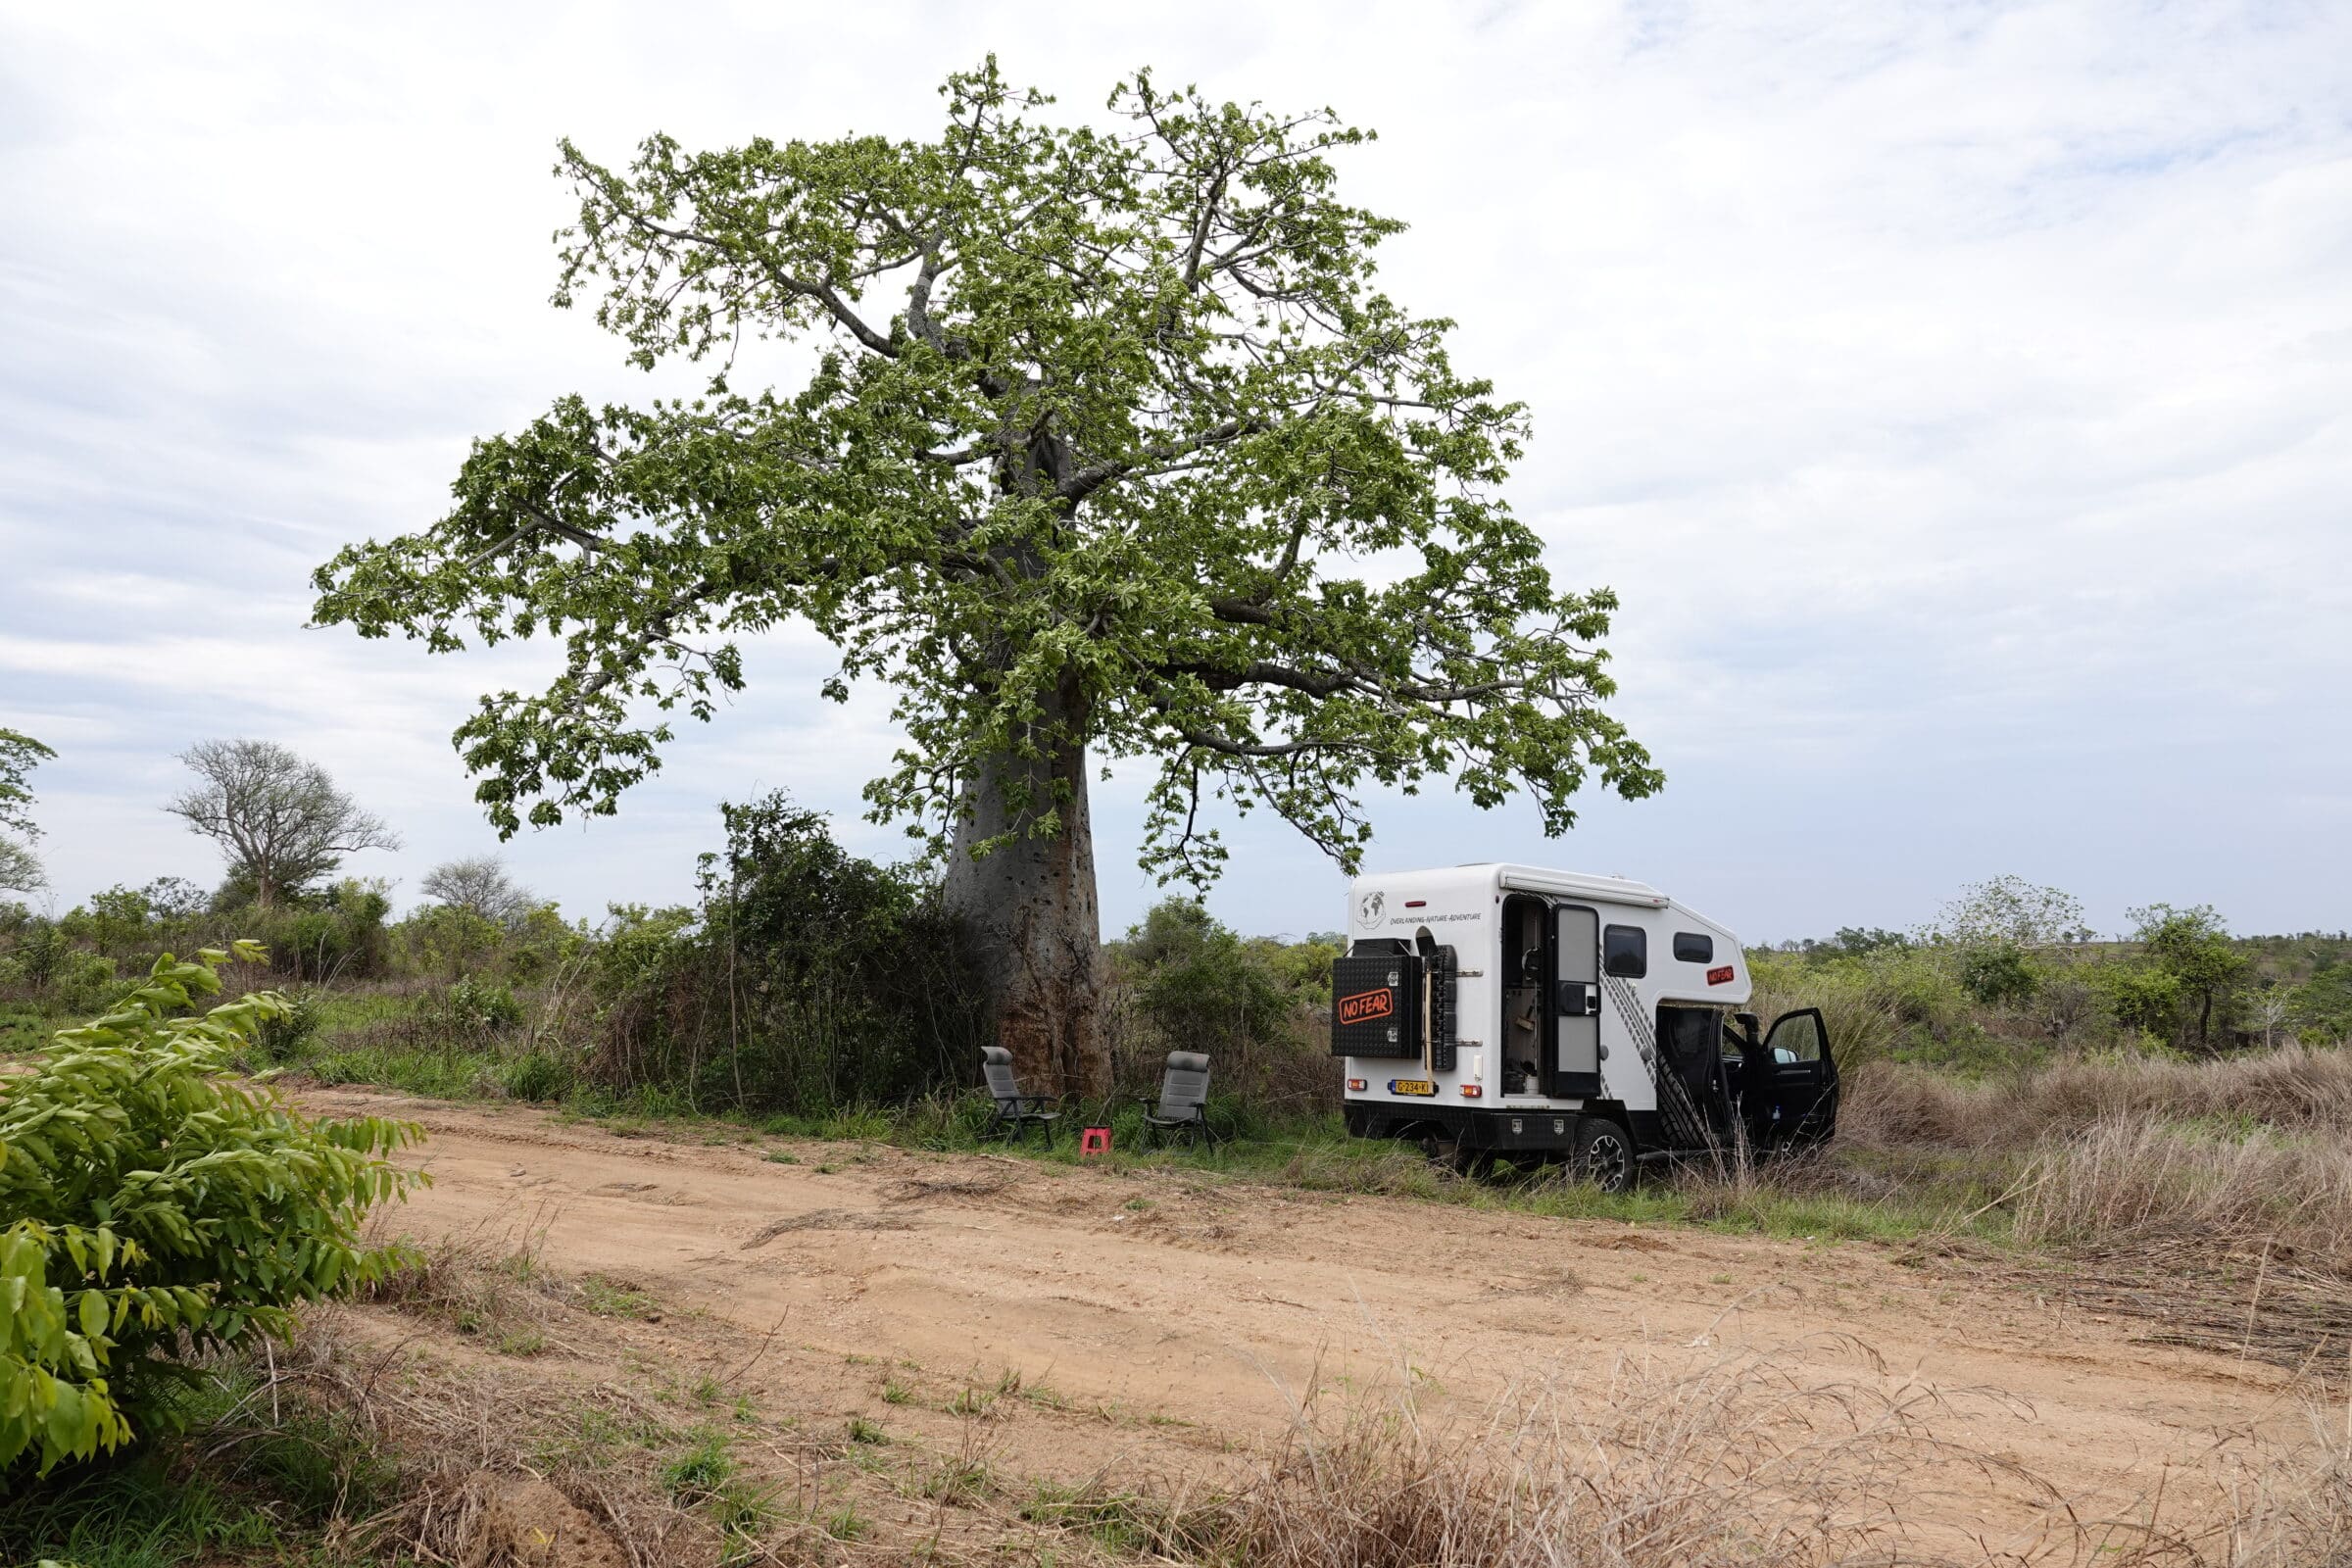 Kaffe under baobabträdet | Överlandning i Angola